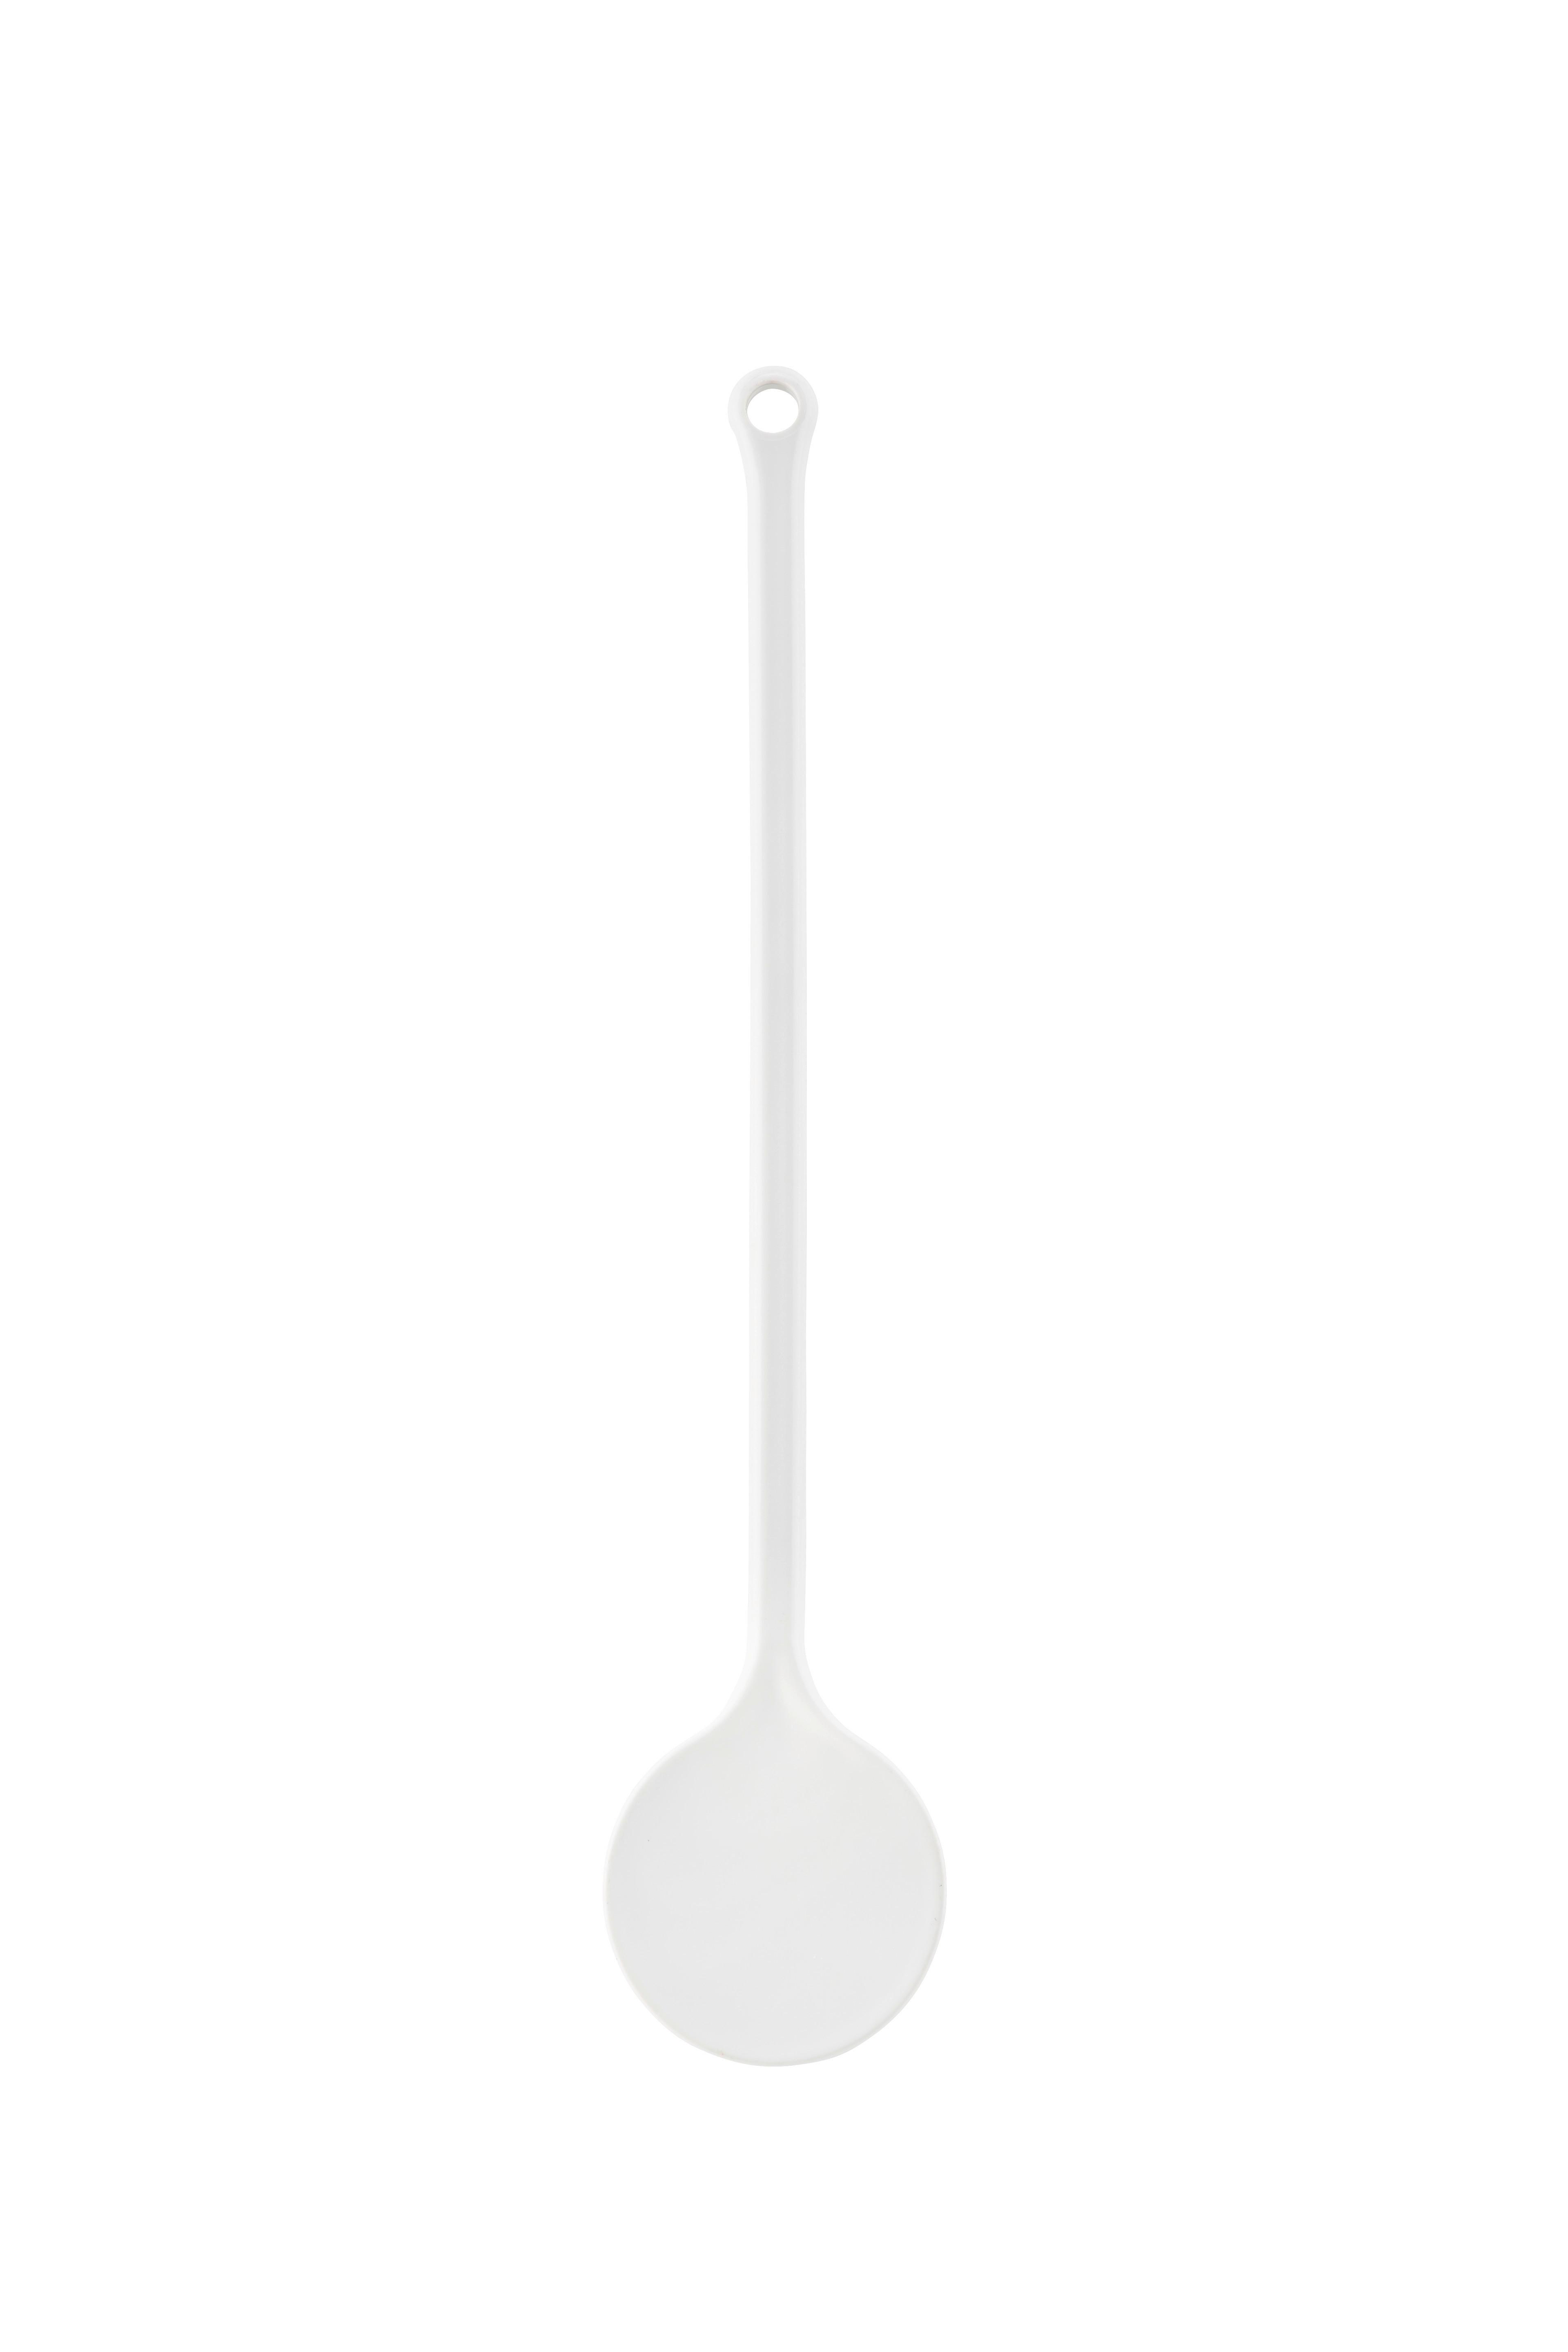 Kochlöffel aus Kunststoff Peter L:  30cm, mit Aufhängeöse - Weiß, KONVENTIONELL, Kunststoff (30cm)